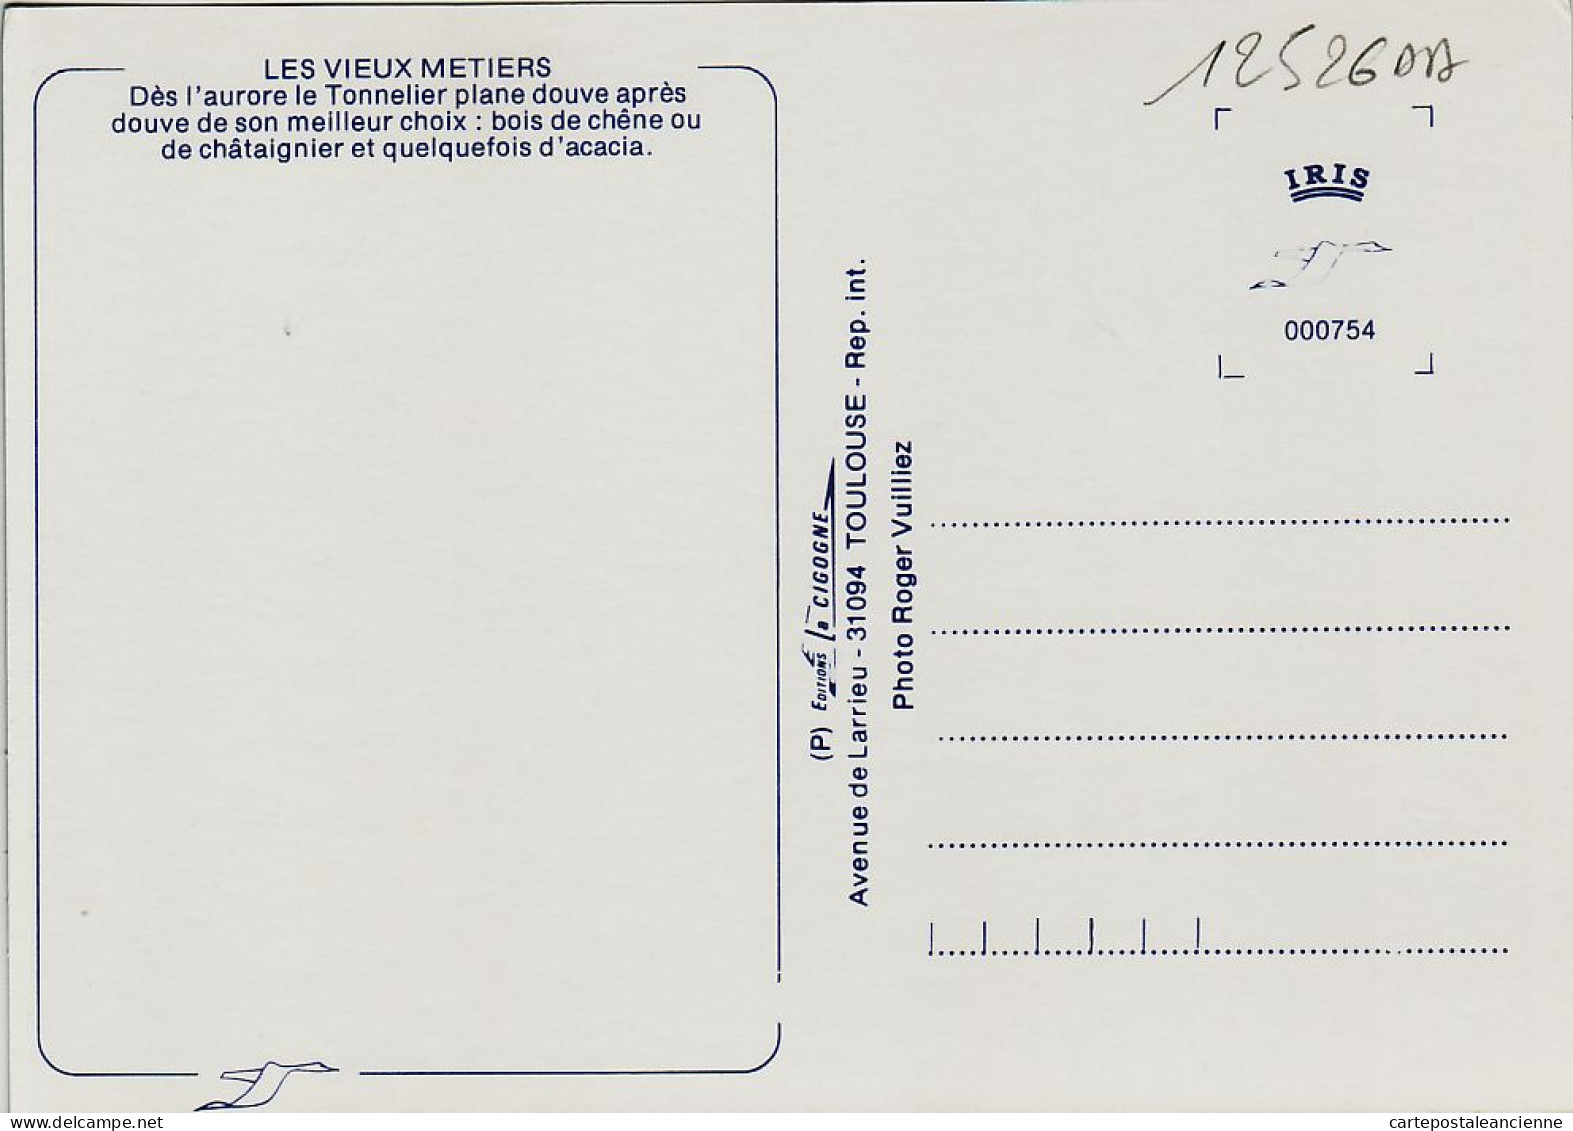 06281 / Midi-Pyrénées Le TONNELIER Douve Chene Chataignier Accacia Vin VIEUX METIERS 1980s- Photo VUILLIEZ CIGOGNE - Artisanat